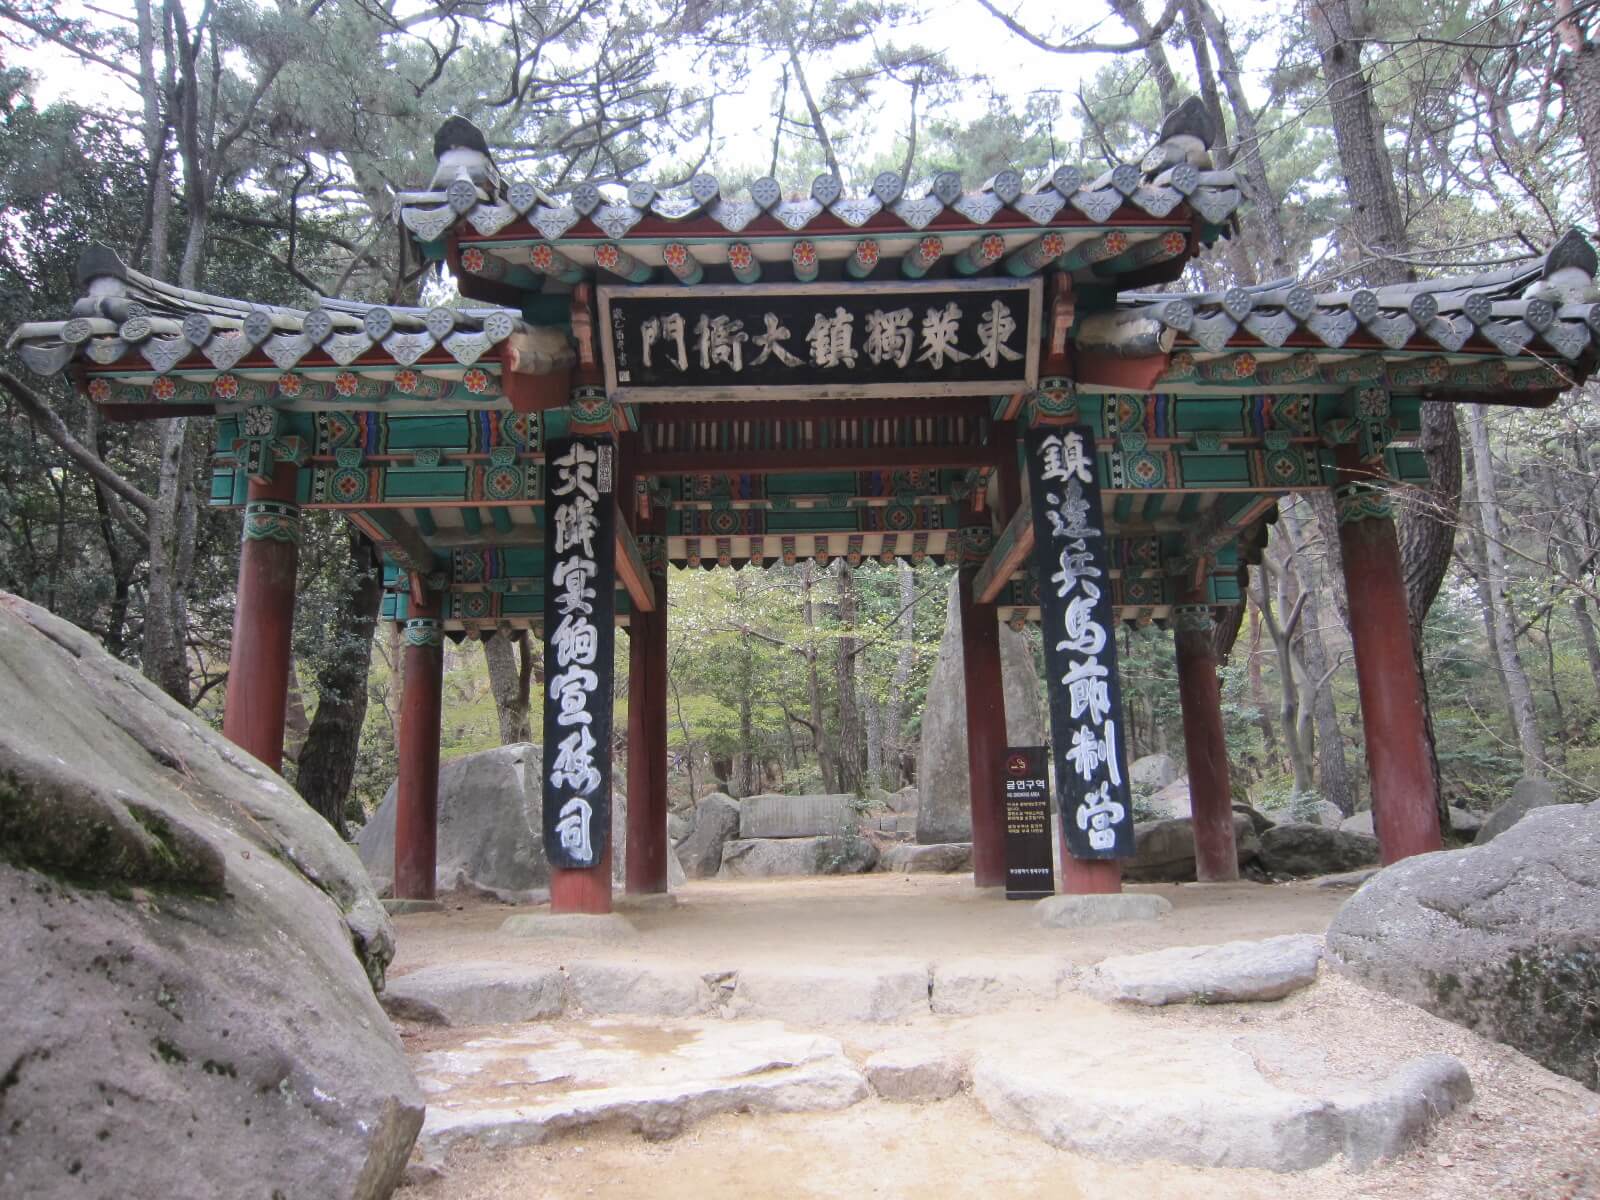 Gate, Busan